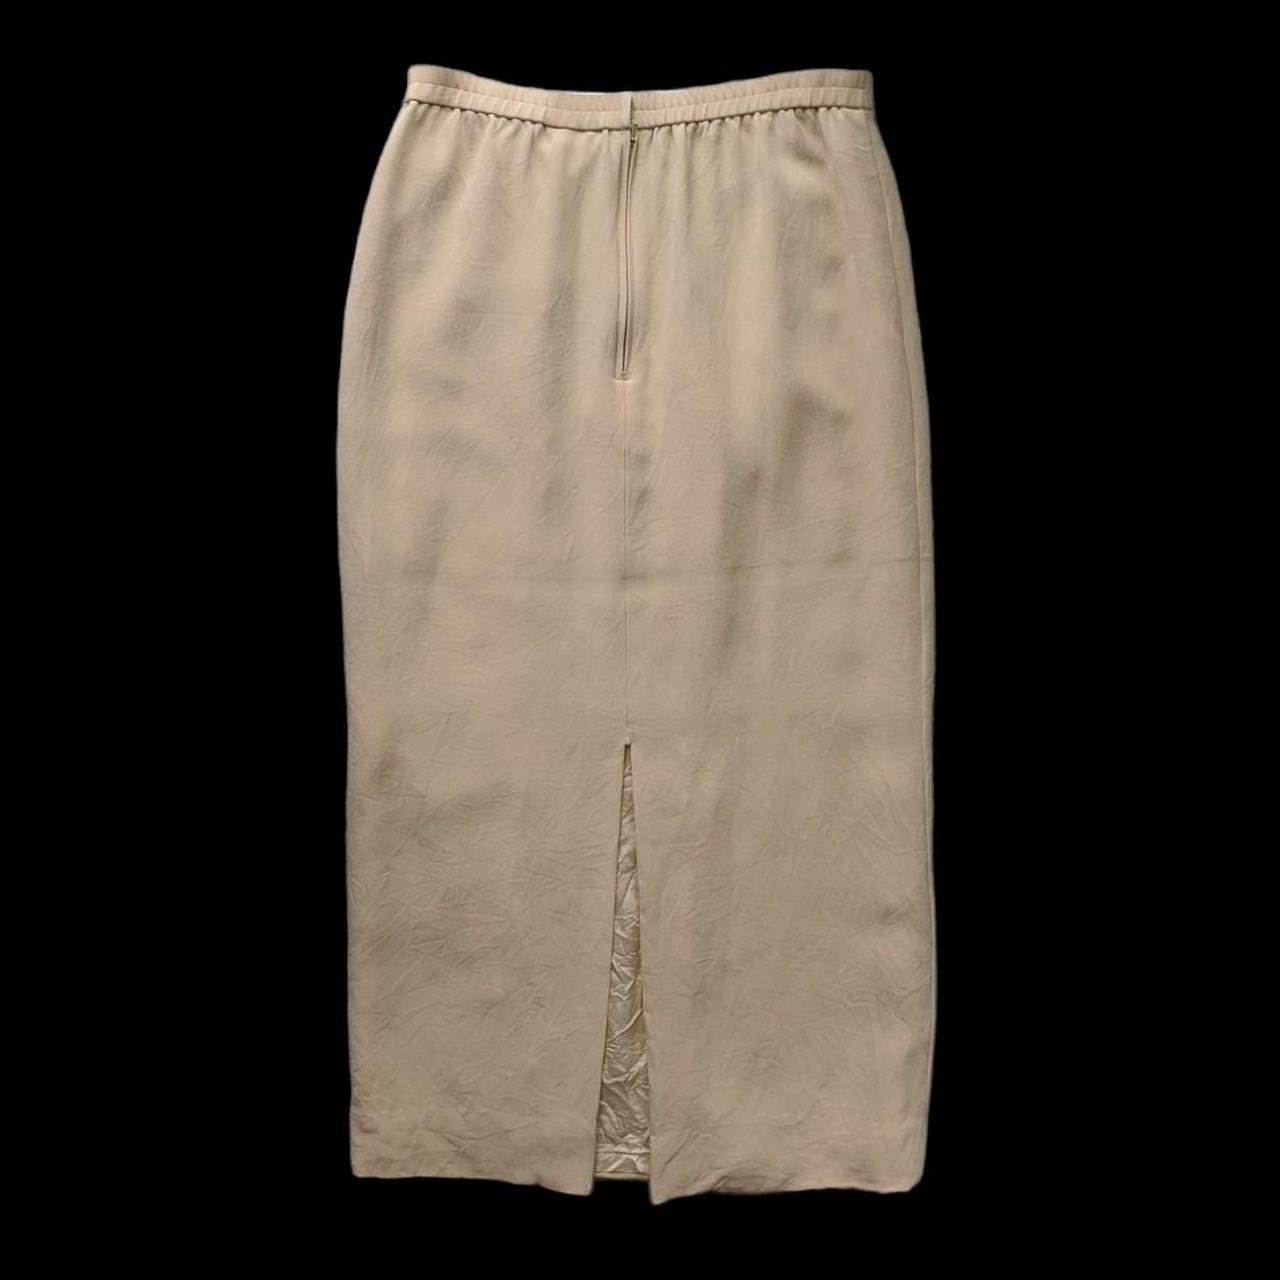 Vintage textured silk pencil skirt. Featuring a... - Depop